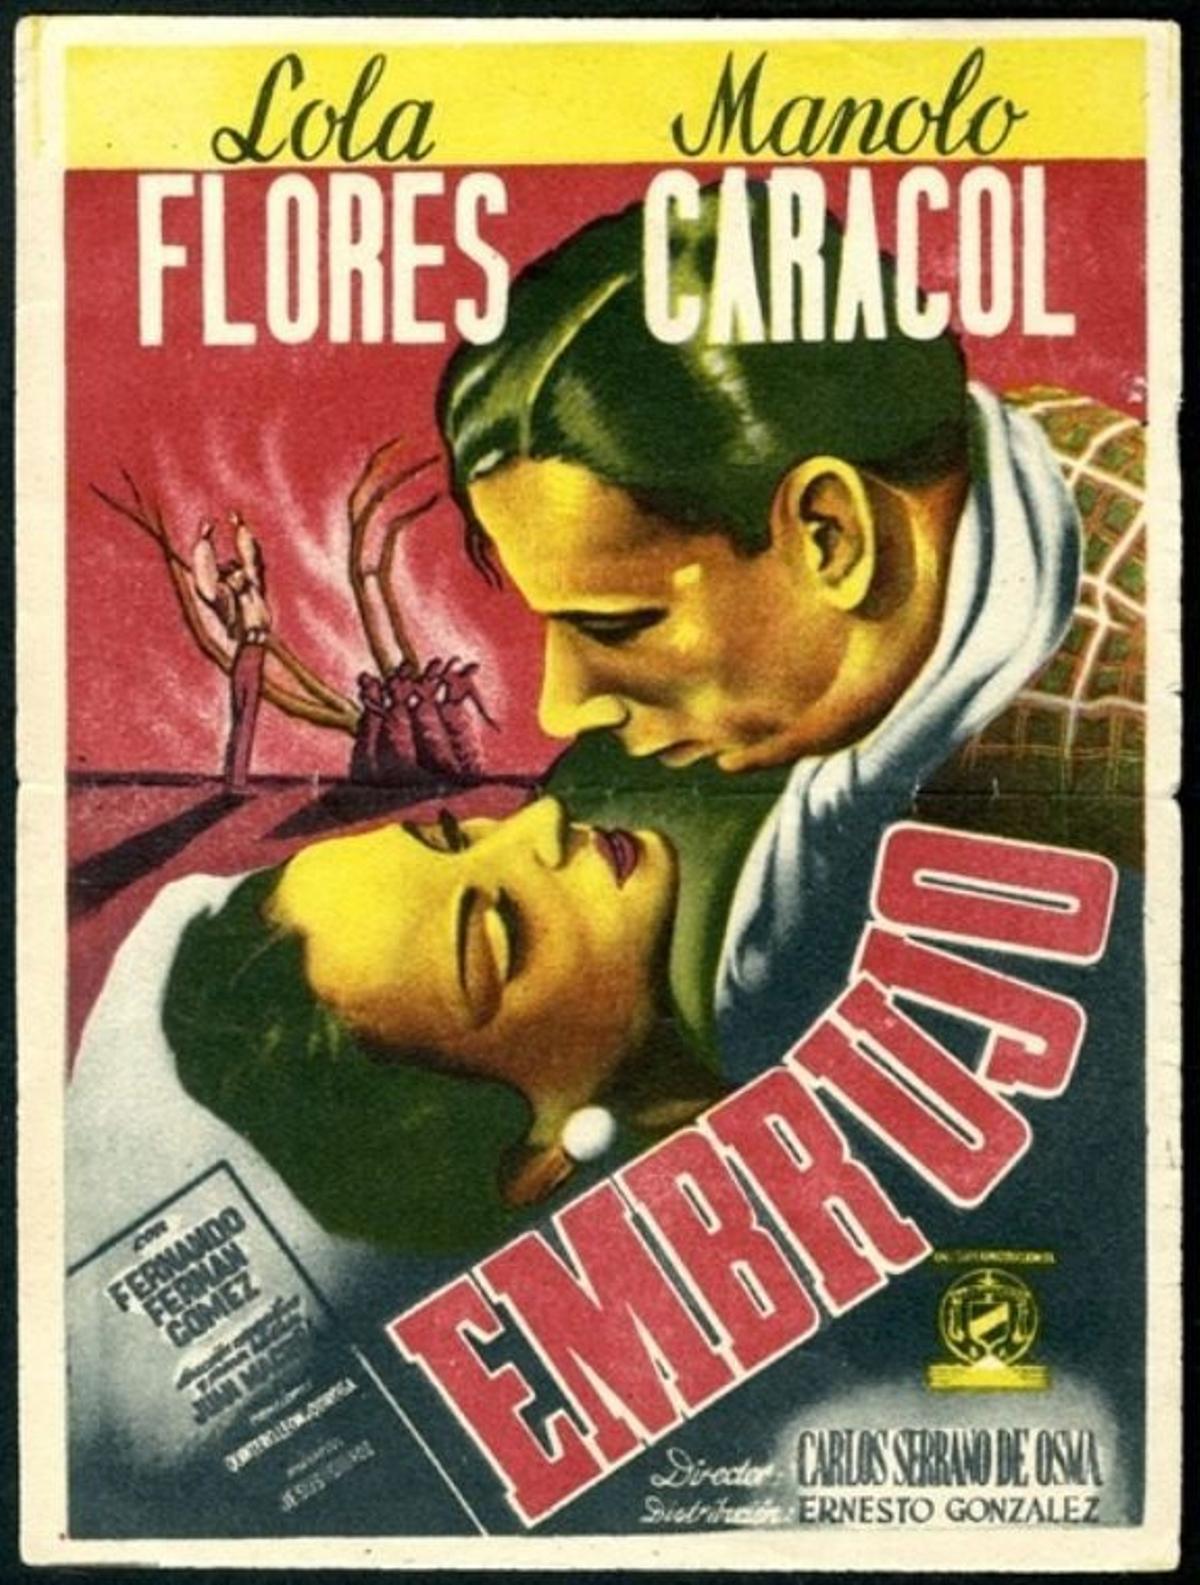 Cartel de la película 'Embrujo'.